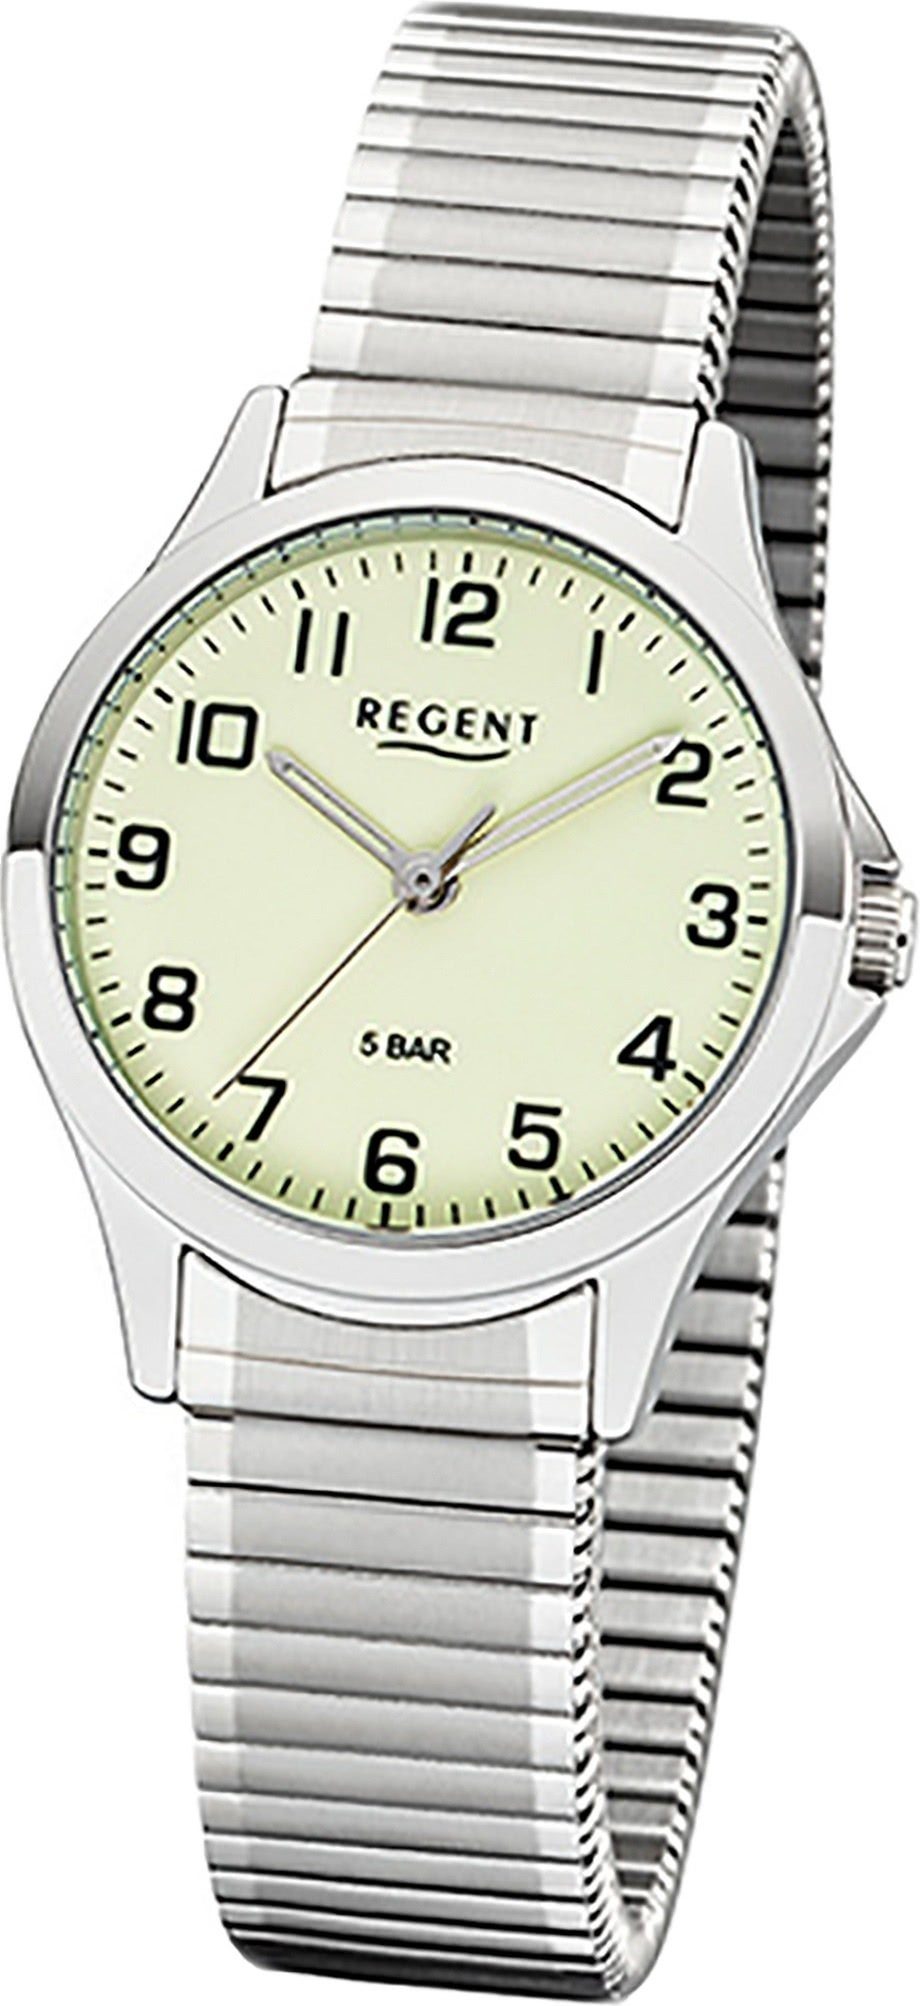 Regent Quarzuhr Regent Metall Damen Uhr 2242423 Analog, Damenuhr Metallarmband silber, rundes Gehäuse, klein (ca. 29mm)